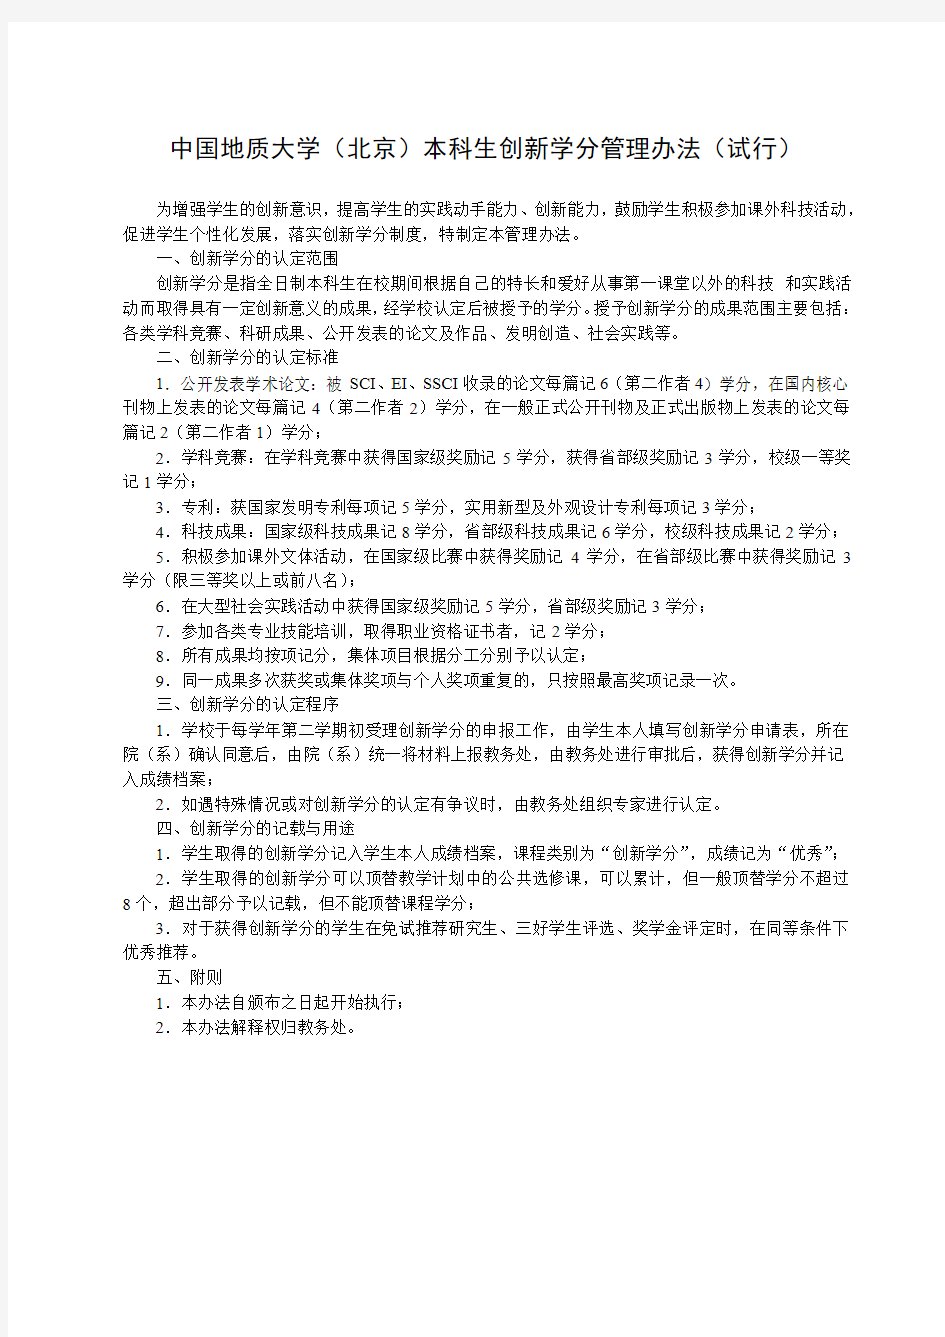 中国地质大学北京创新学分管理办法